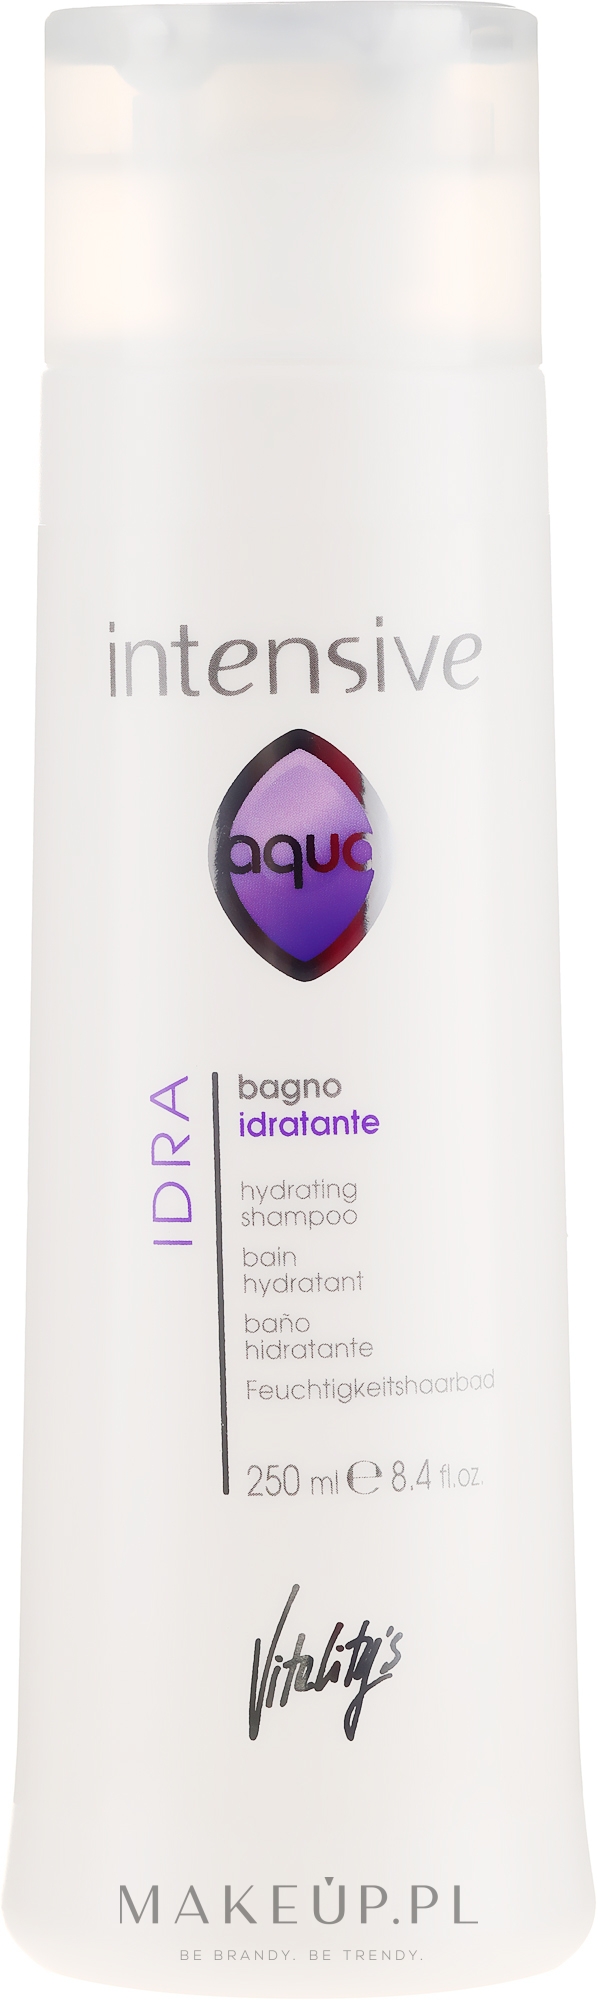 Nawilżający szampon do włosów - Vitality's Intensive Aqua Hydrating Shampoo — Zdjęcie 250 ml